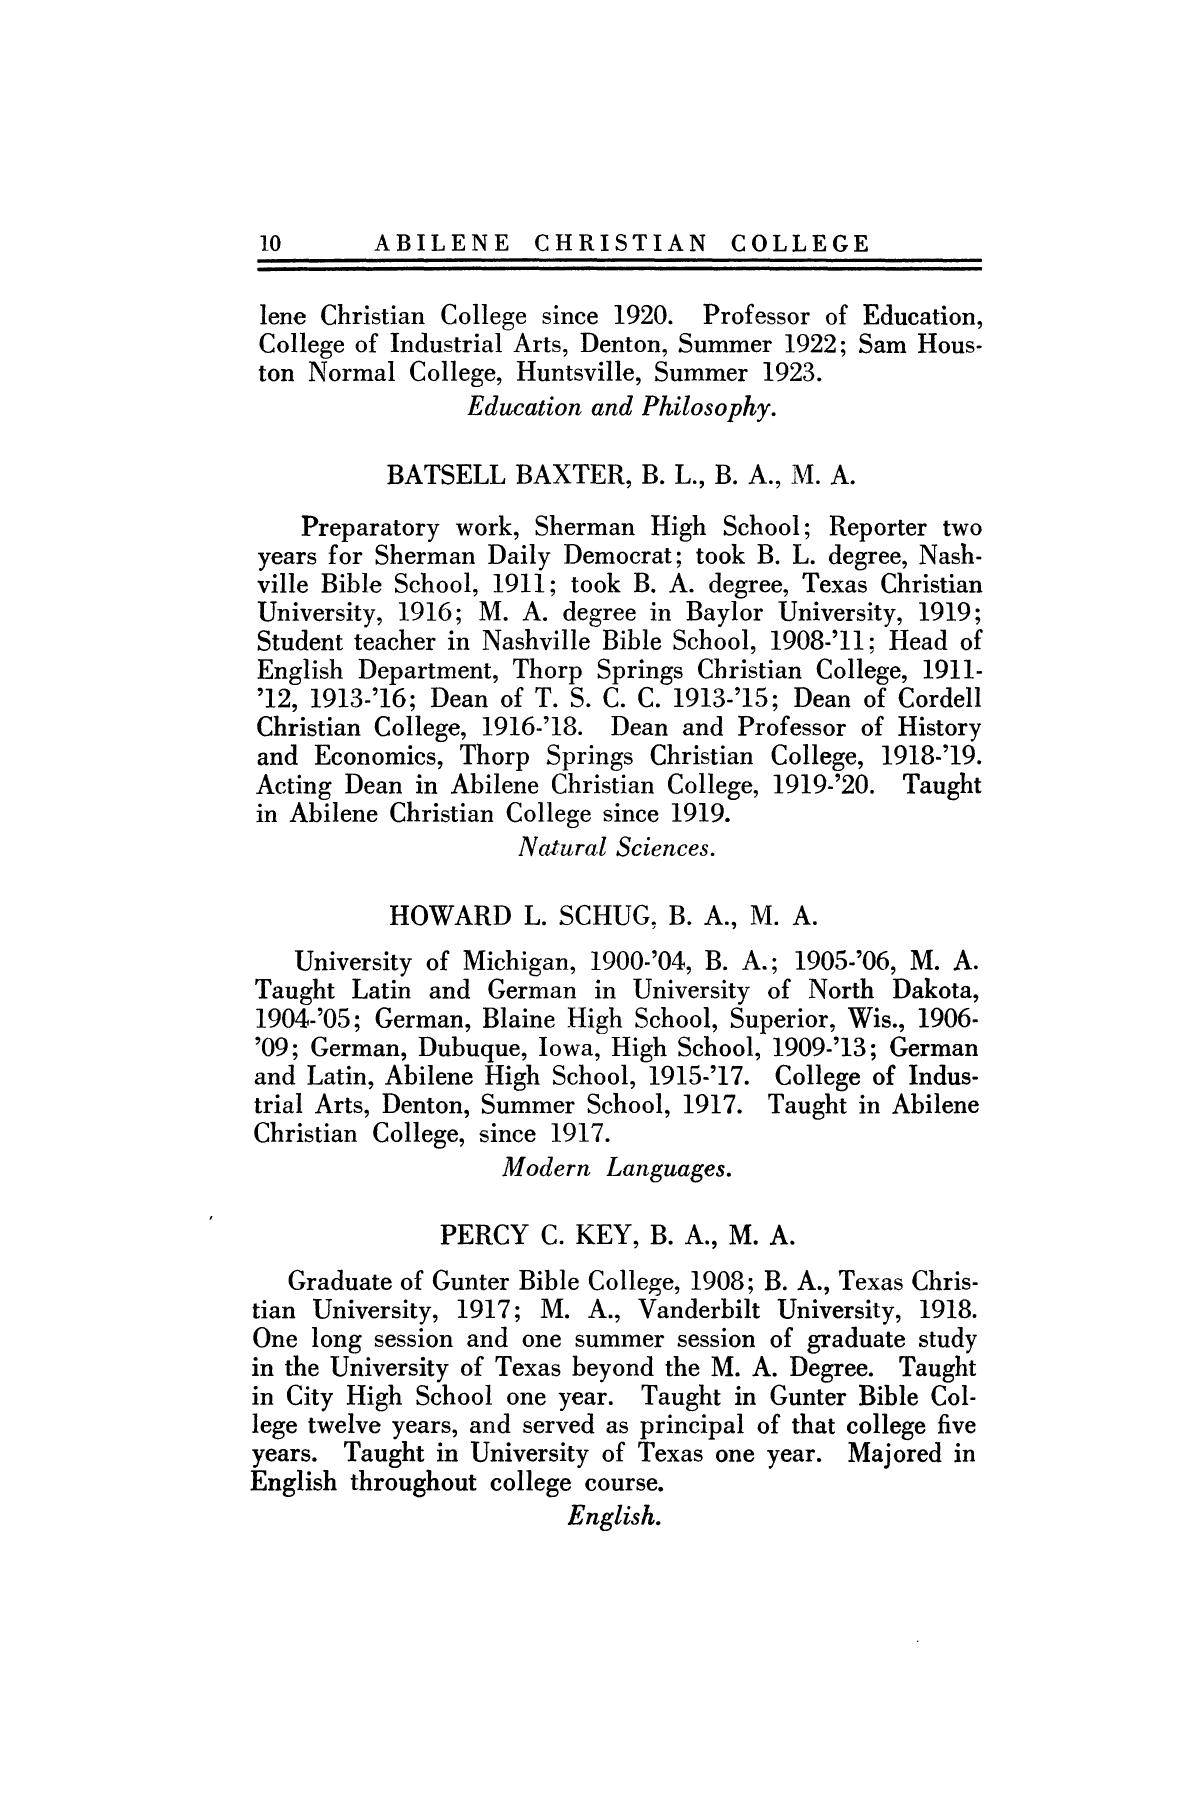 Catalog of Abilene Christian College, 1923-1924
                                                
                                                    10
                                                